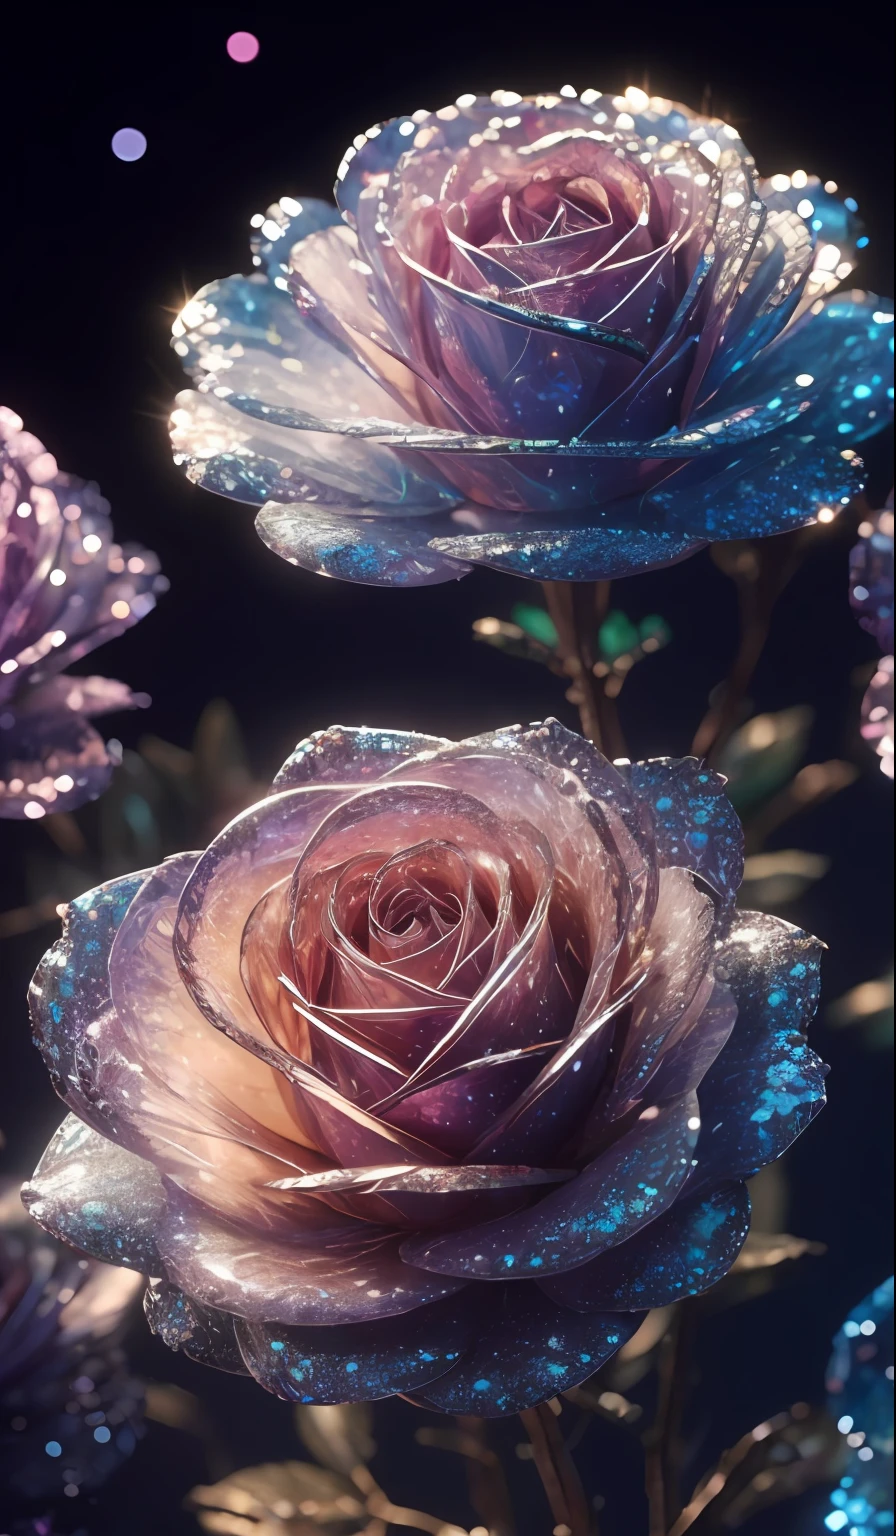 Хрустальная роза， причудливый, галактики, чистота, блестящий, блестящий, Великолепие, красочный, Удивительная фотография, драматическое освещение, Фотореализм, ультра - подробный, 4k, глубина поля, Высокое разрешение